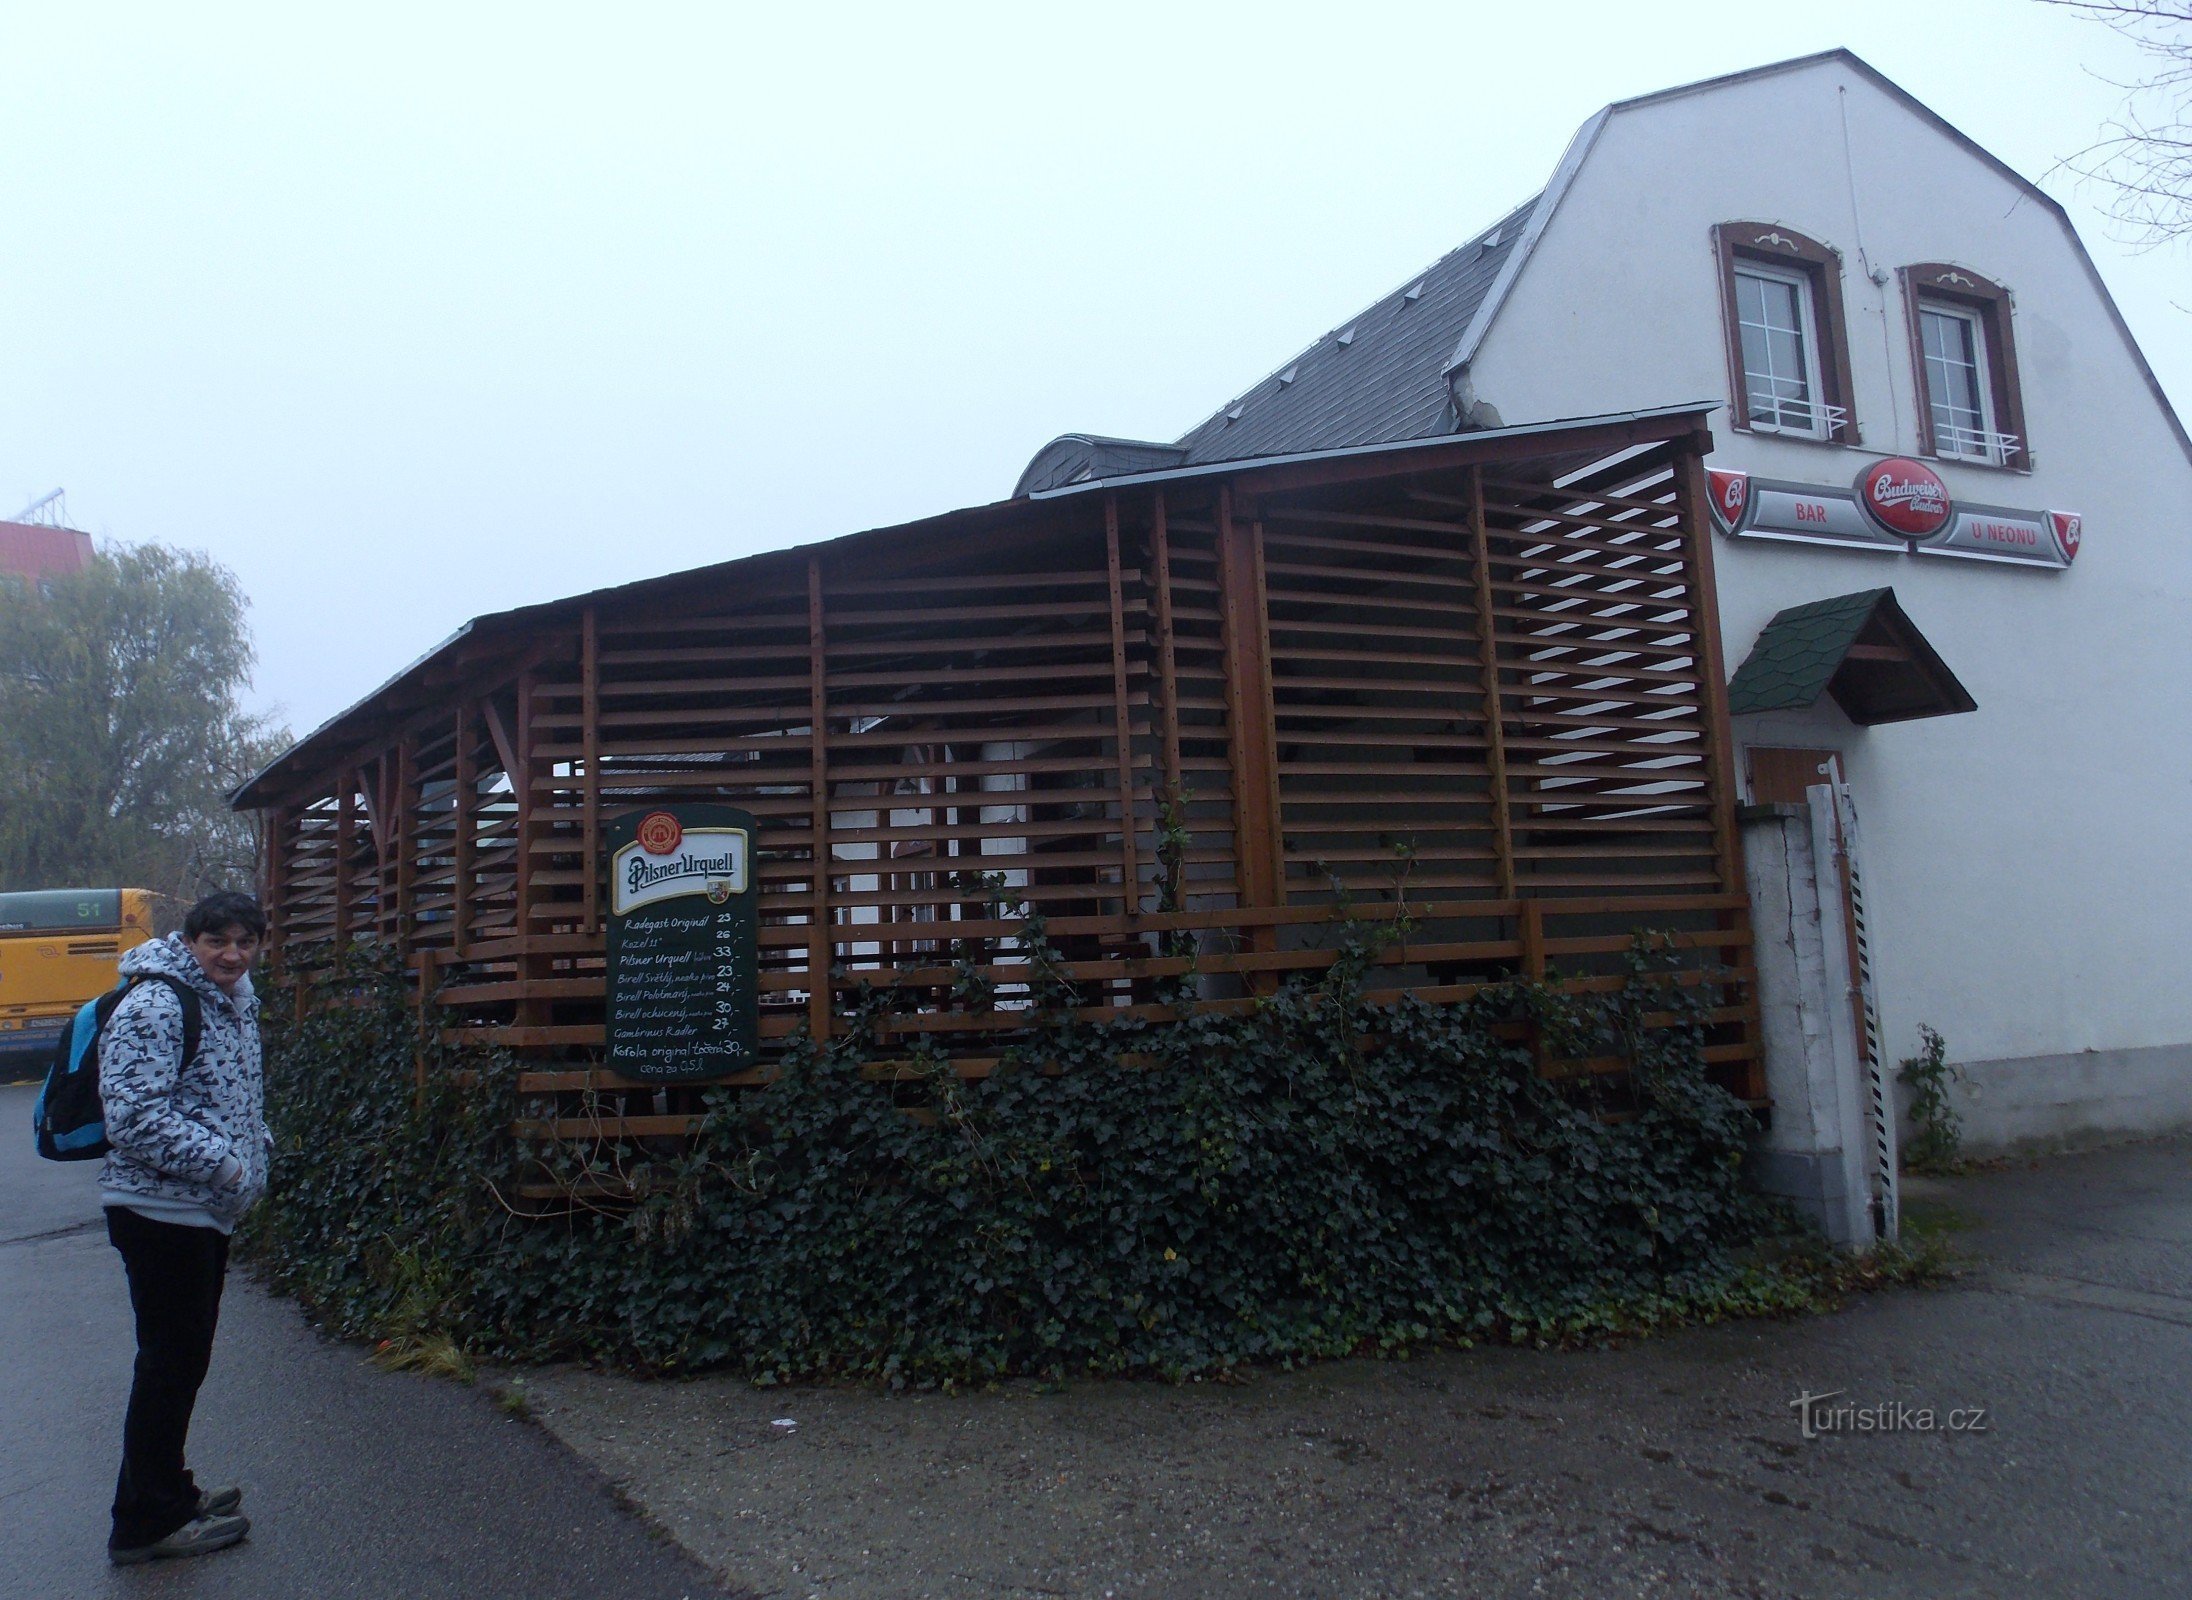 Restaurantul U Neonu din Malenovice în regiunea Zlín